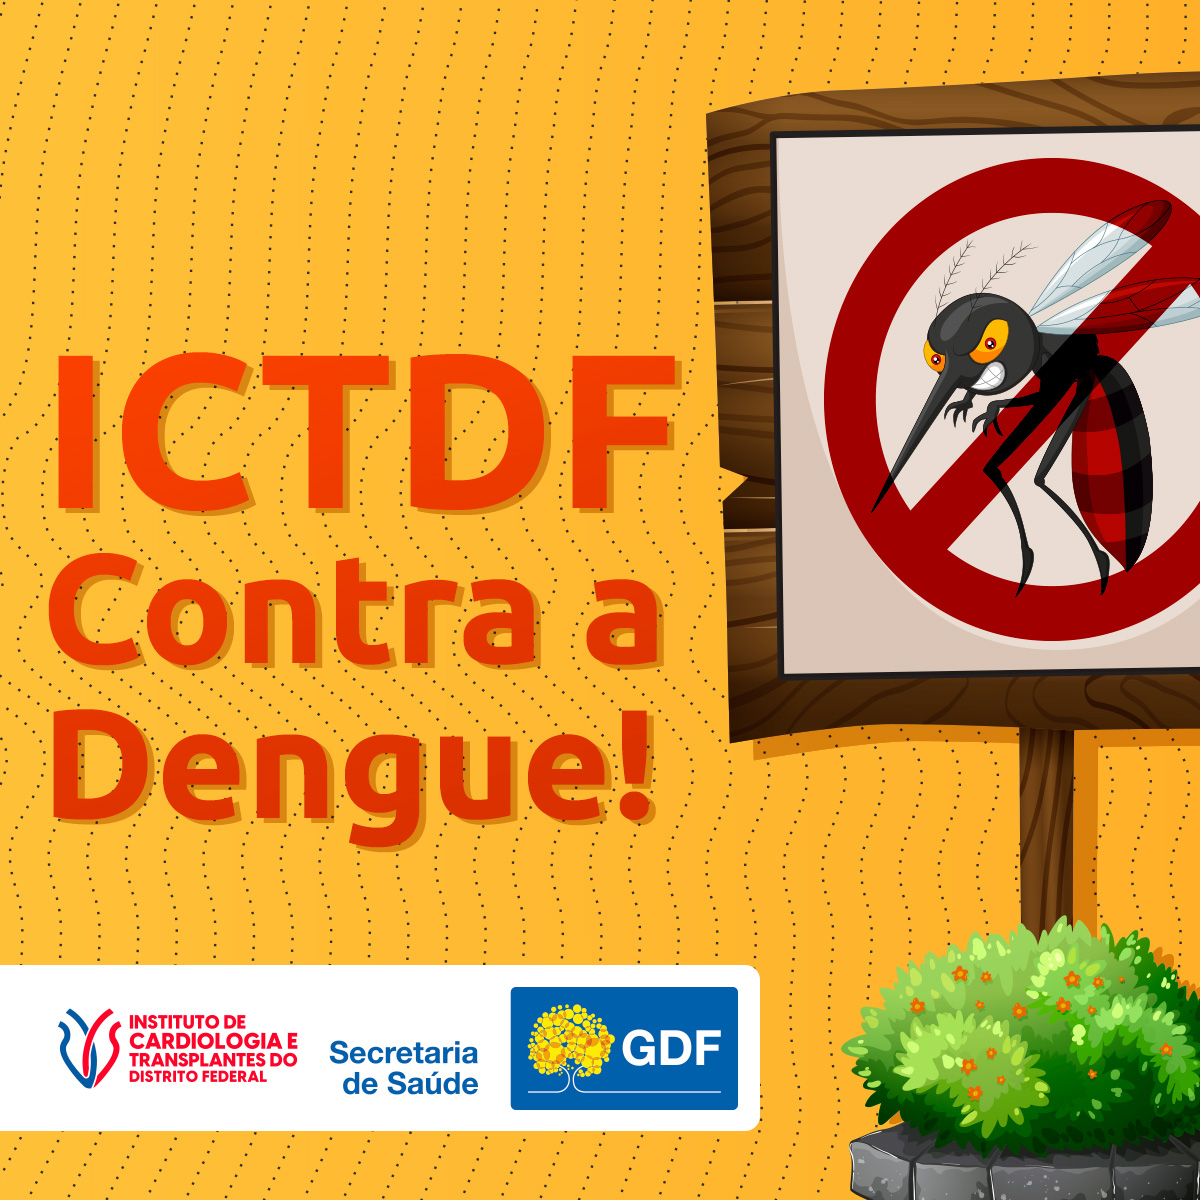 ICTDF alerta e dá dicas para o combate à Dengue